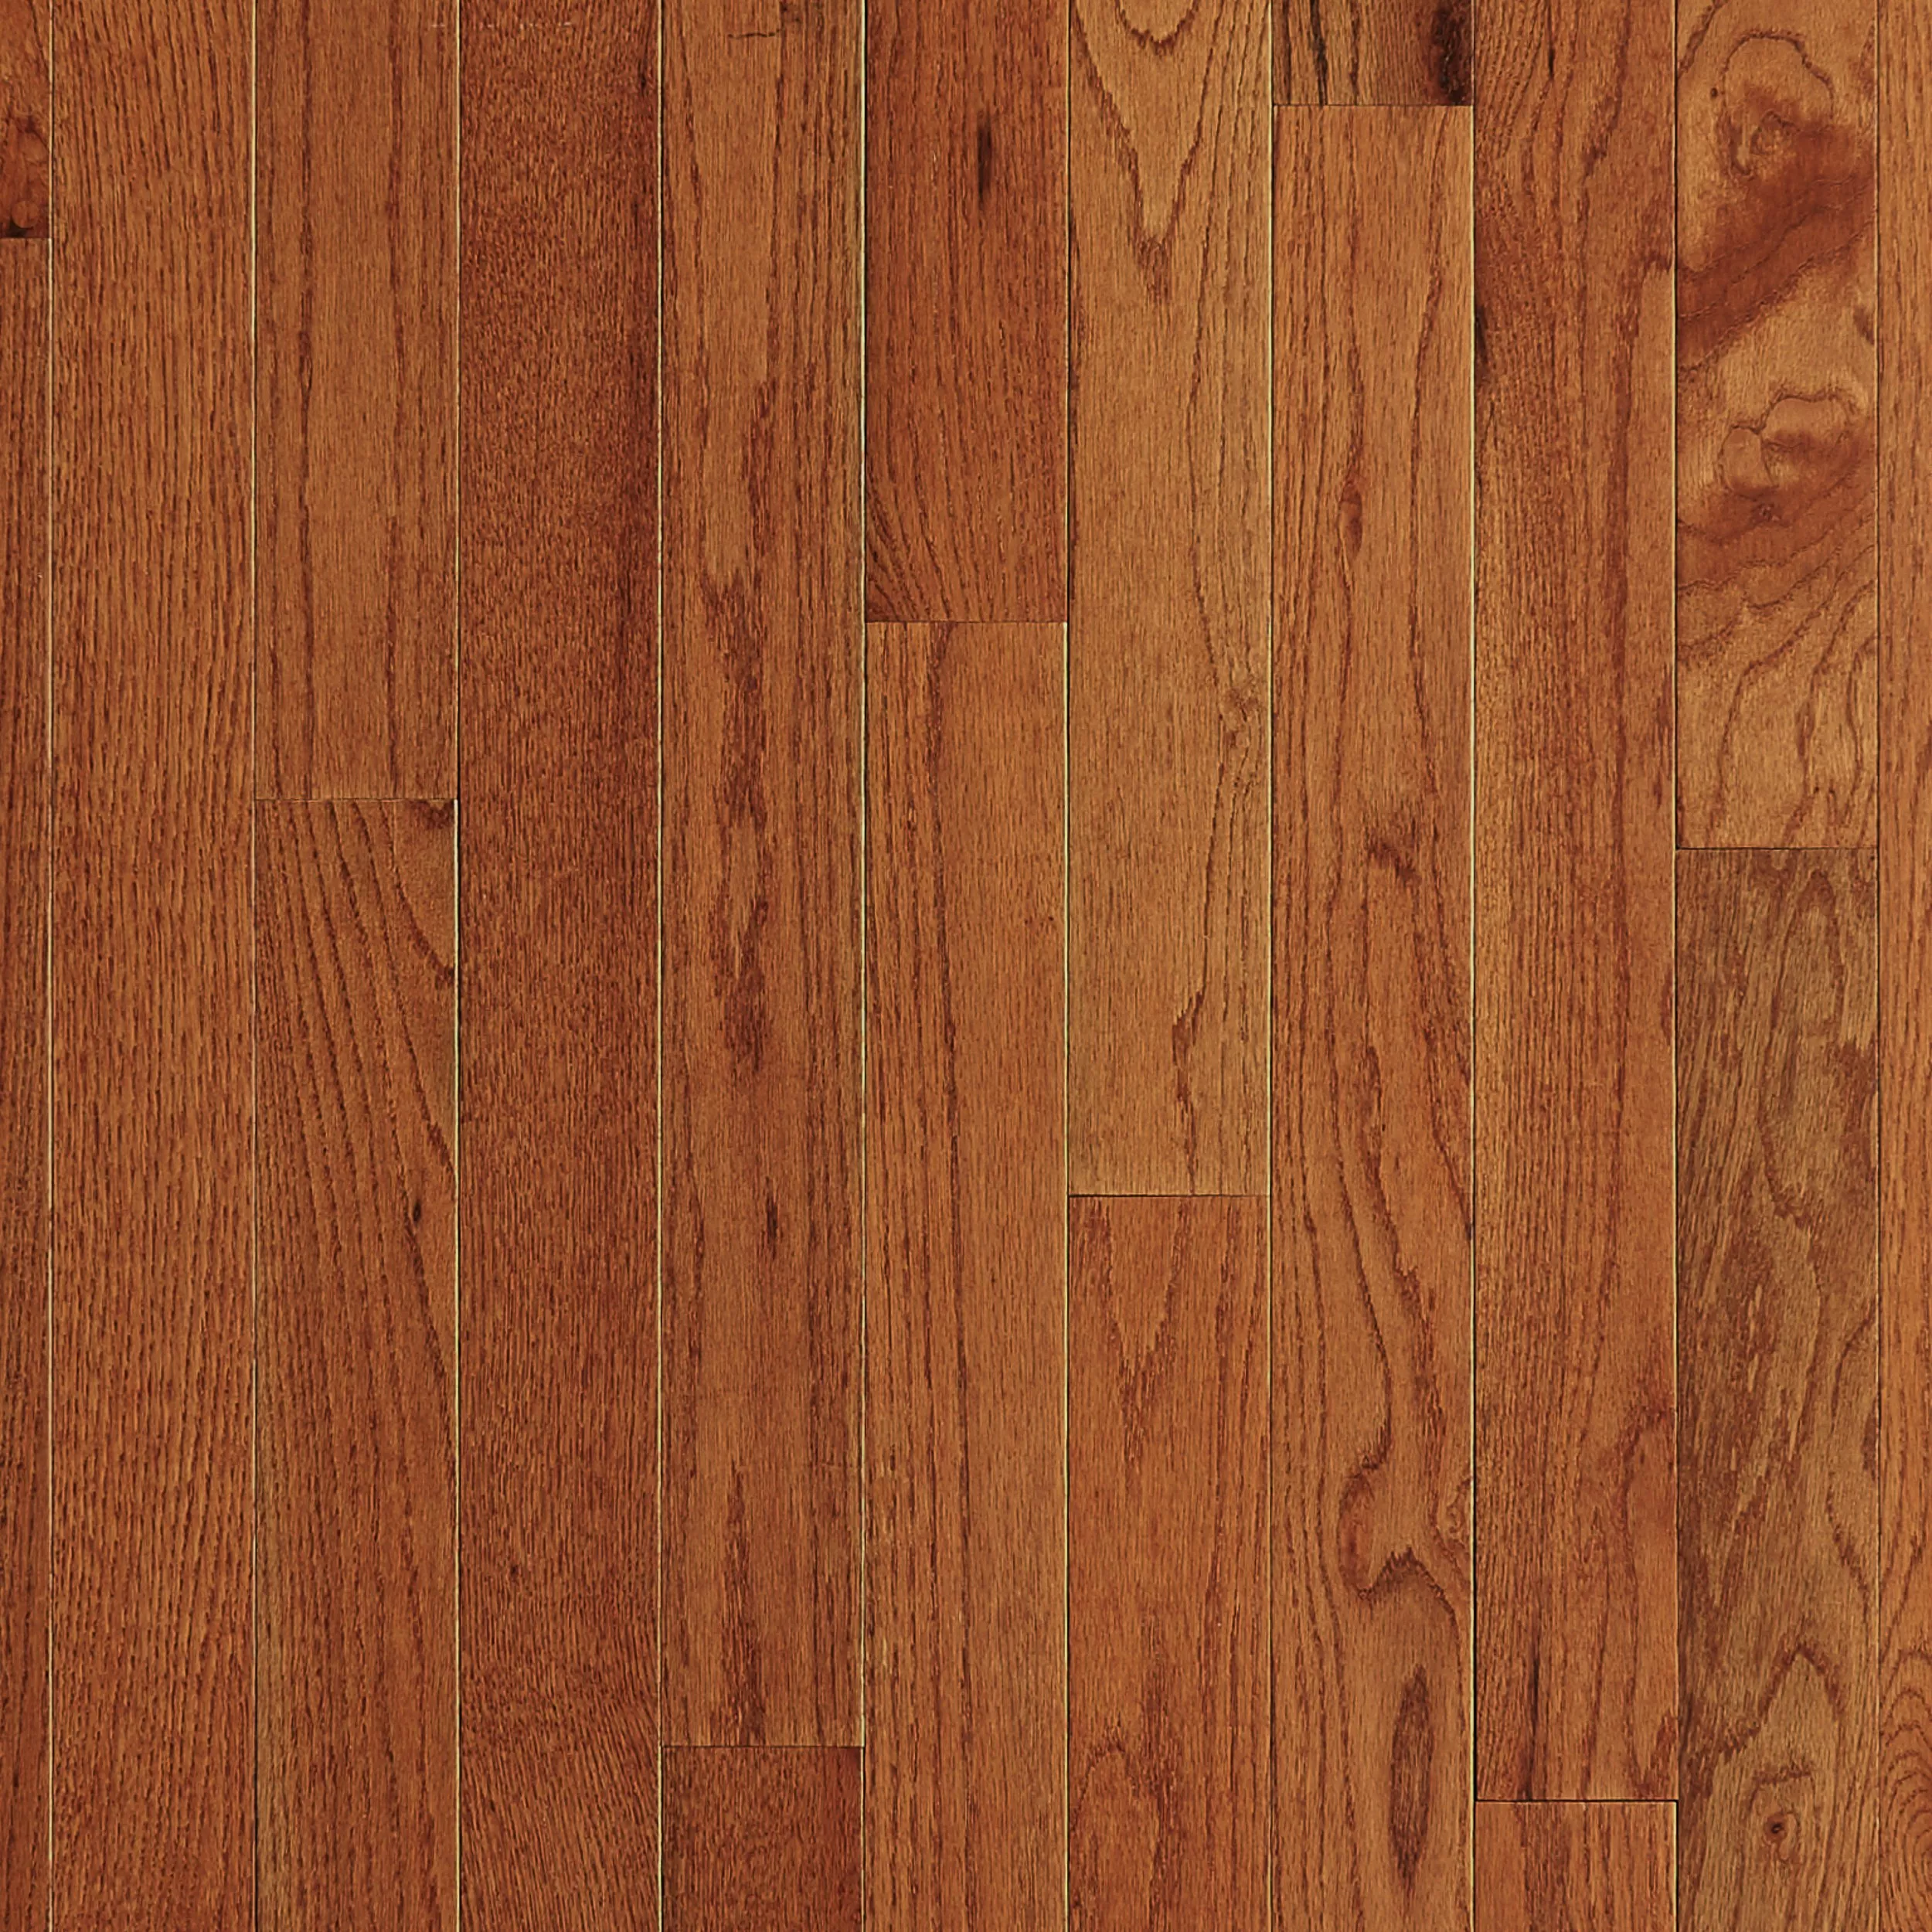 Gunstock Red Oak Smooth Solid Hardwood